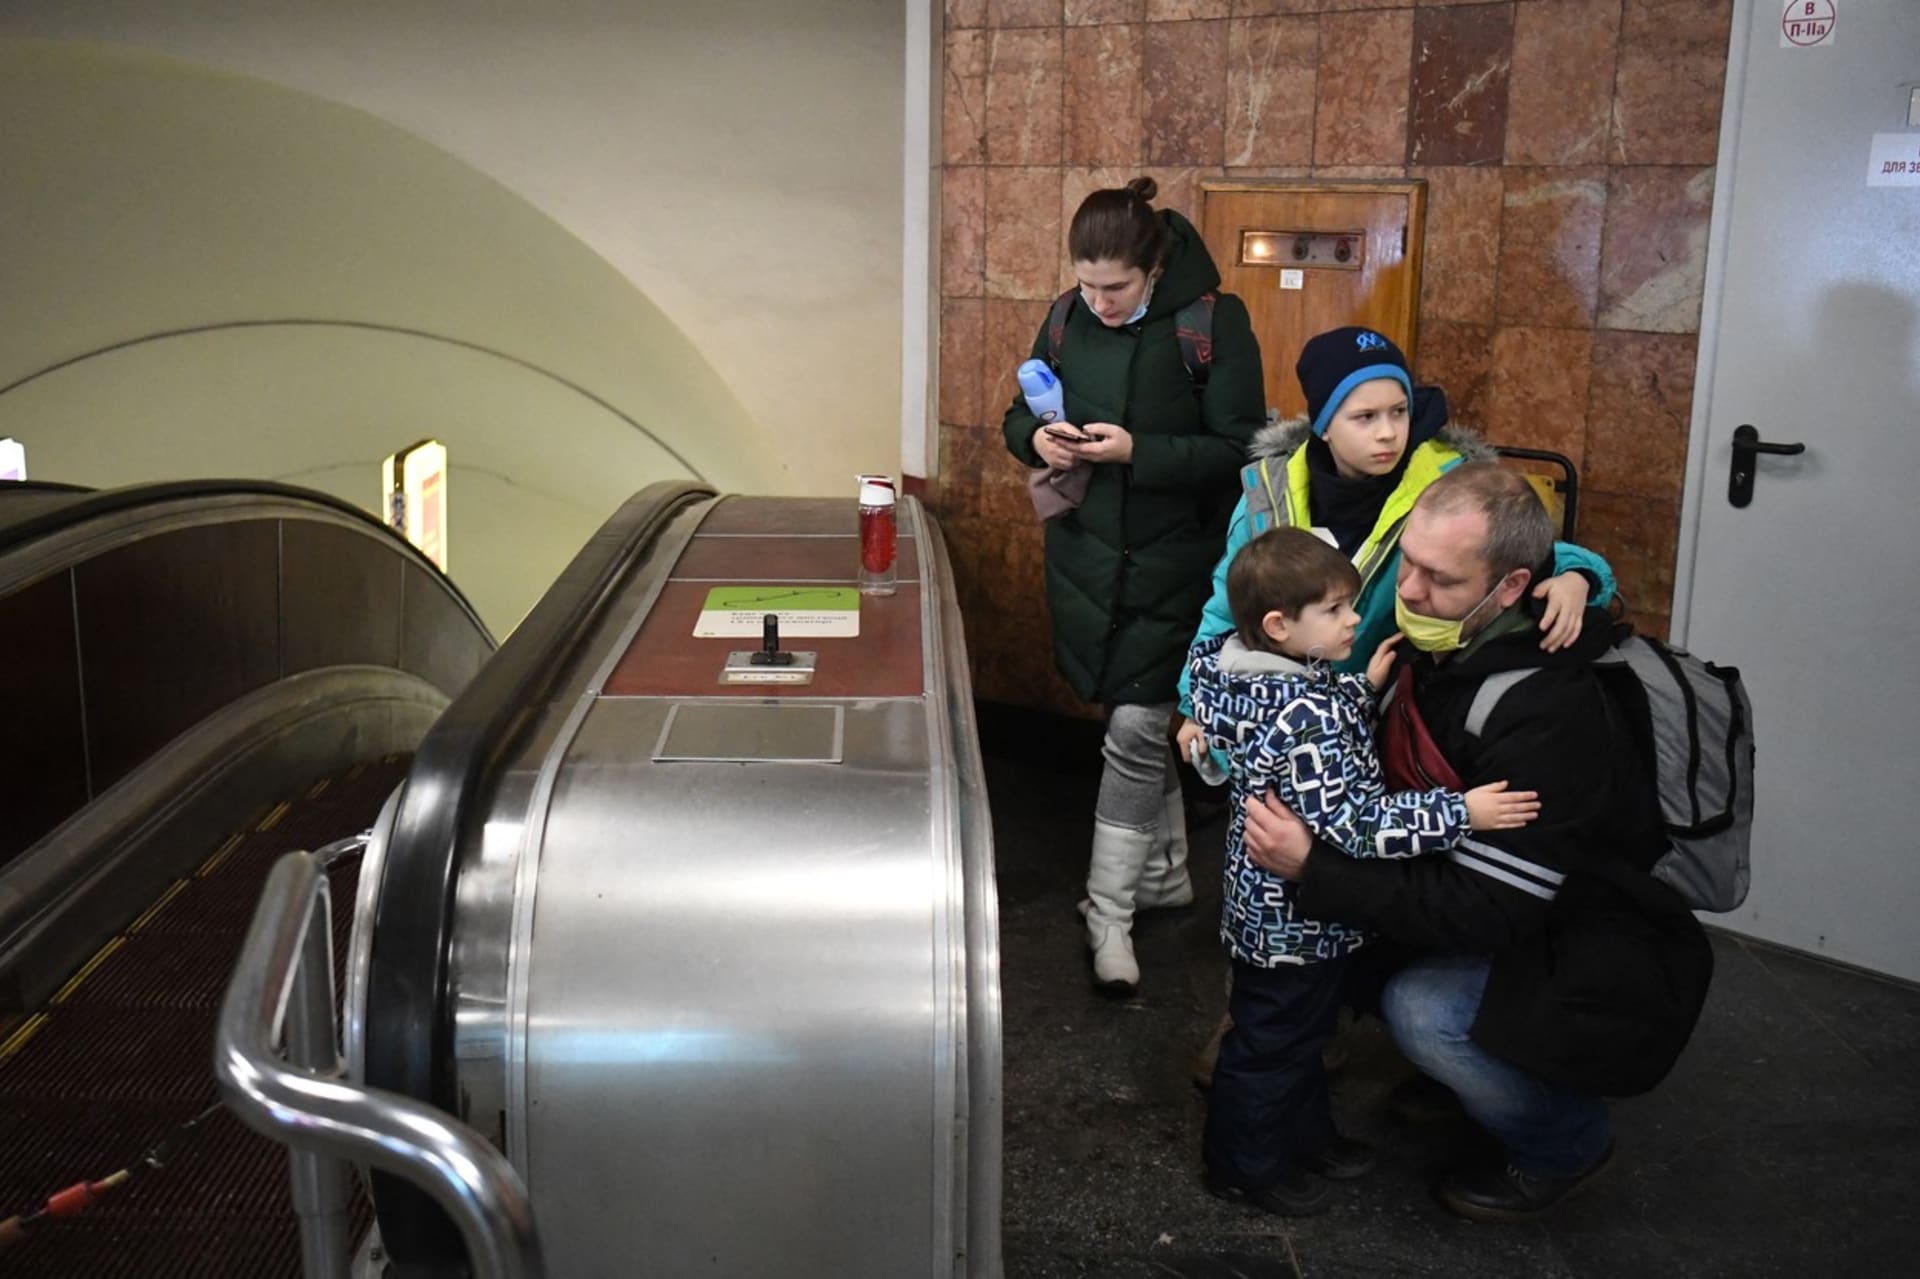 V ukrajinském hlavním městě se obyvatelům bezplatně otevřelo metro.